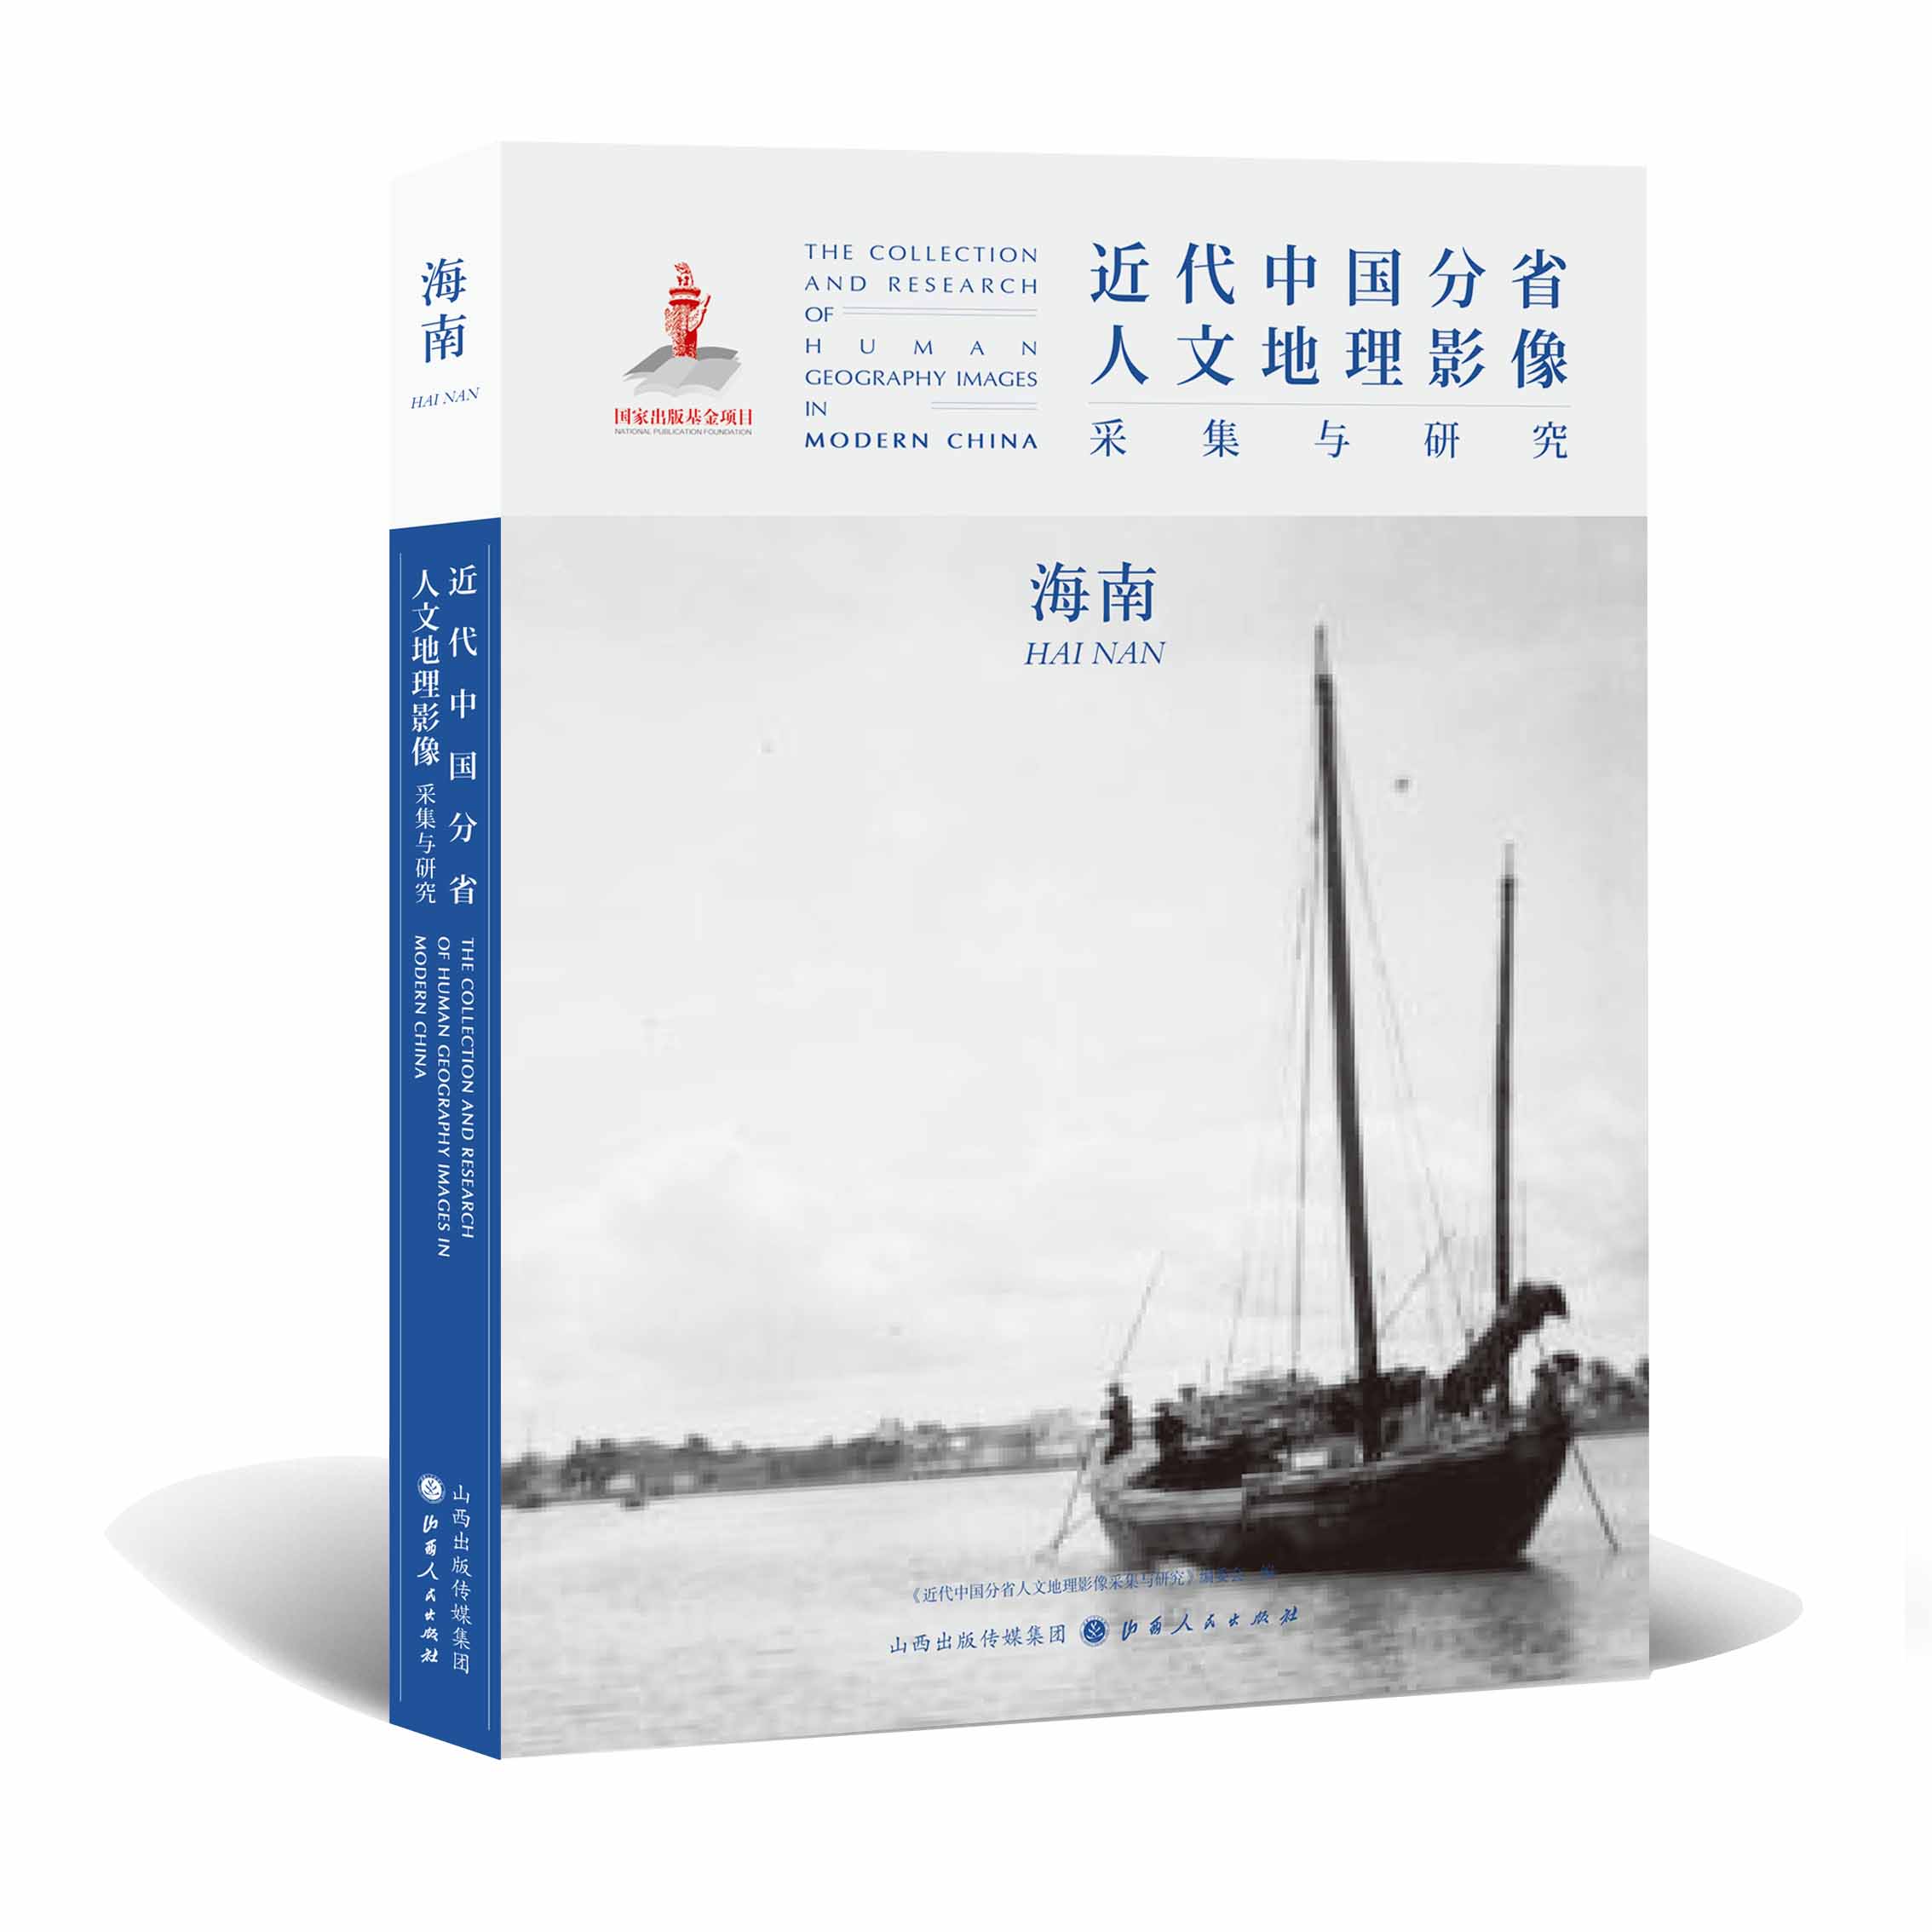 正版包邮 近代中国分省人文地理影像采集与研究 海南 国家出版基金项目 全球采集 用图像读懂中国近代史 近代中国的影像读本